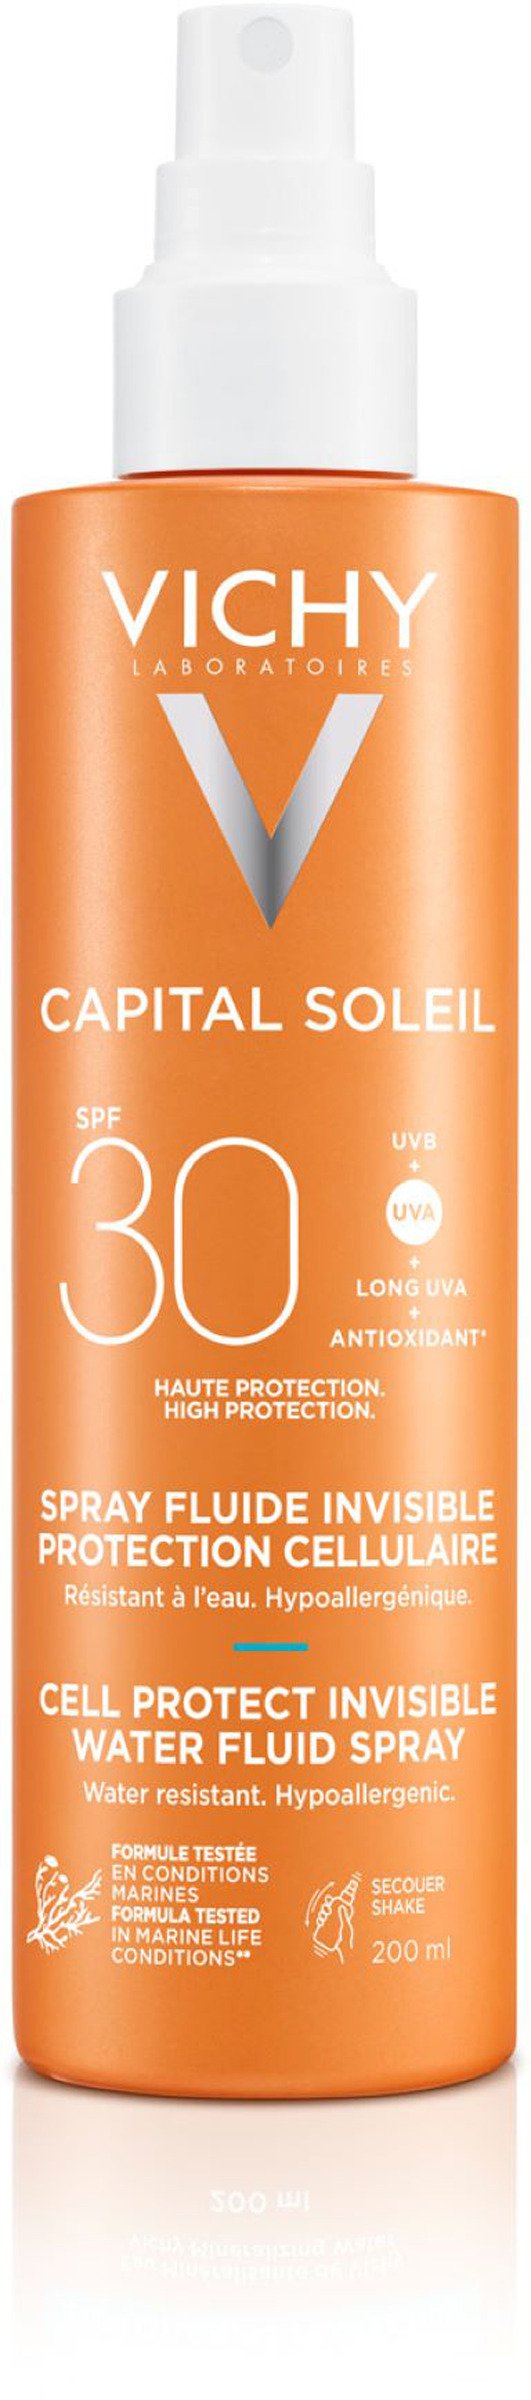 Vichy Capital Soleil Cell Protect SPF30 UV Spray 200 ml